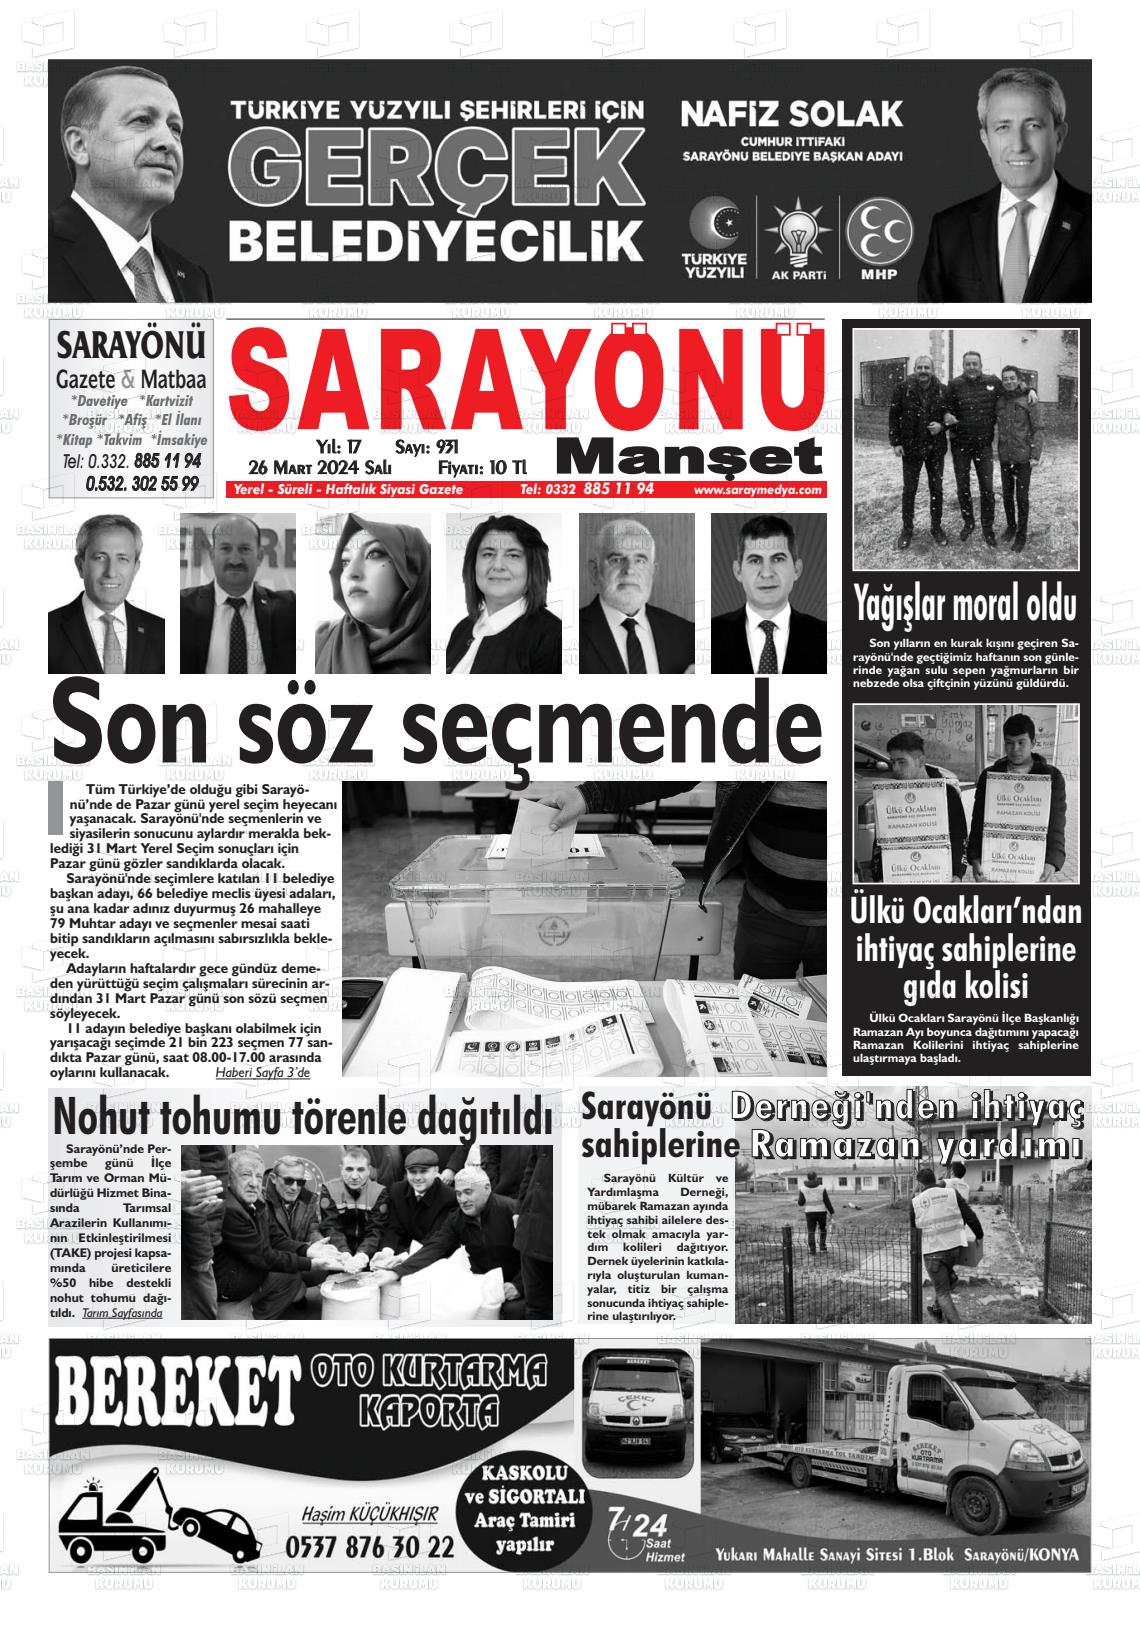 26 Mart 2024 Saray Medya Gazete Manşeti